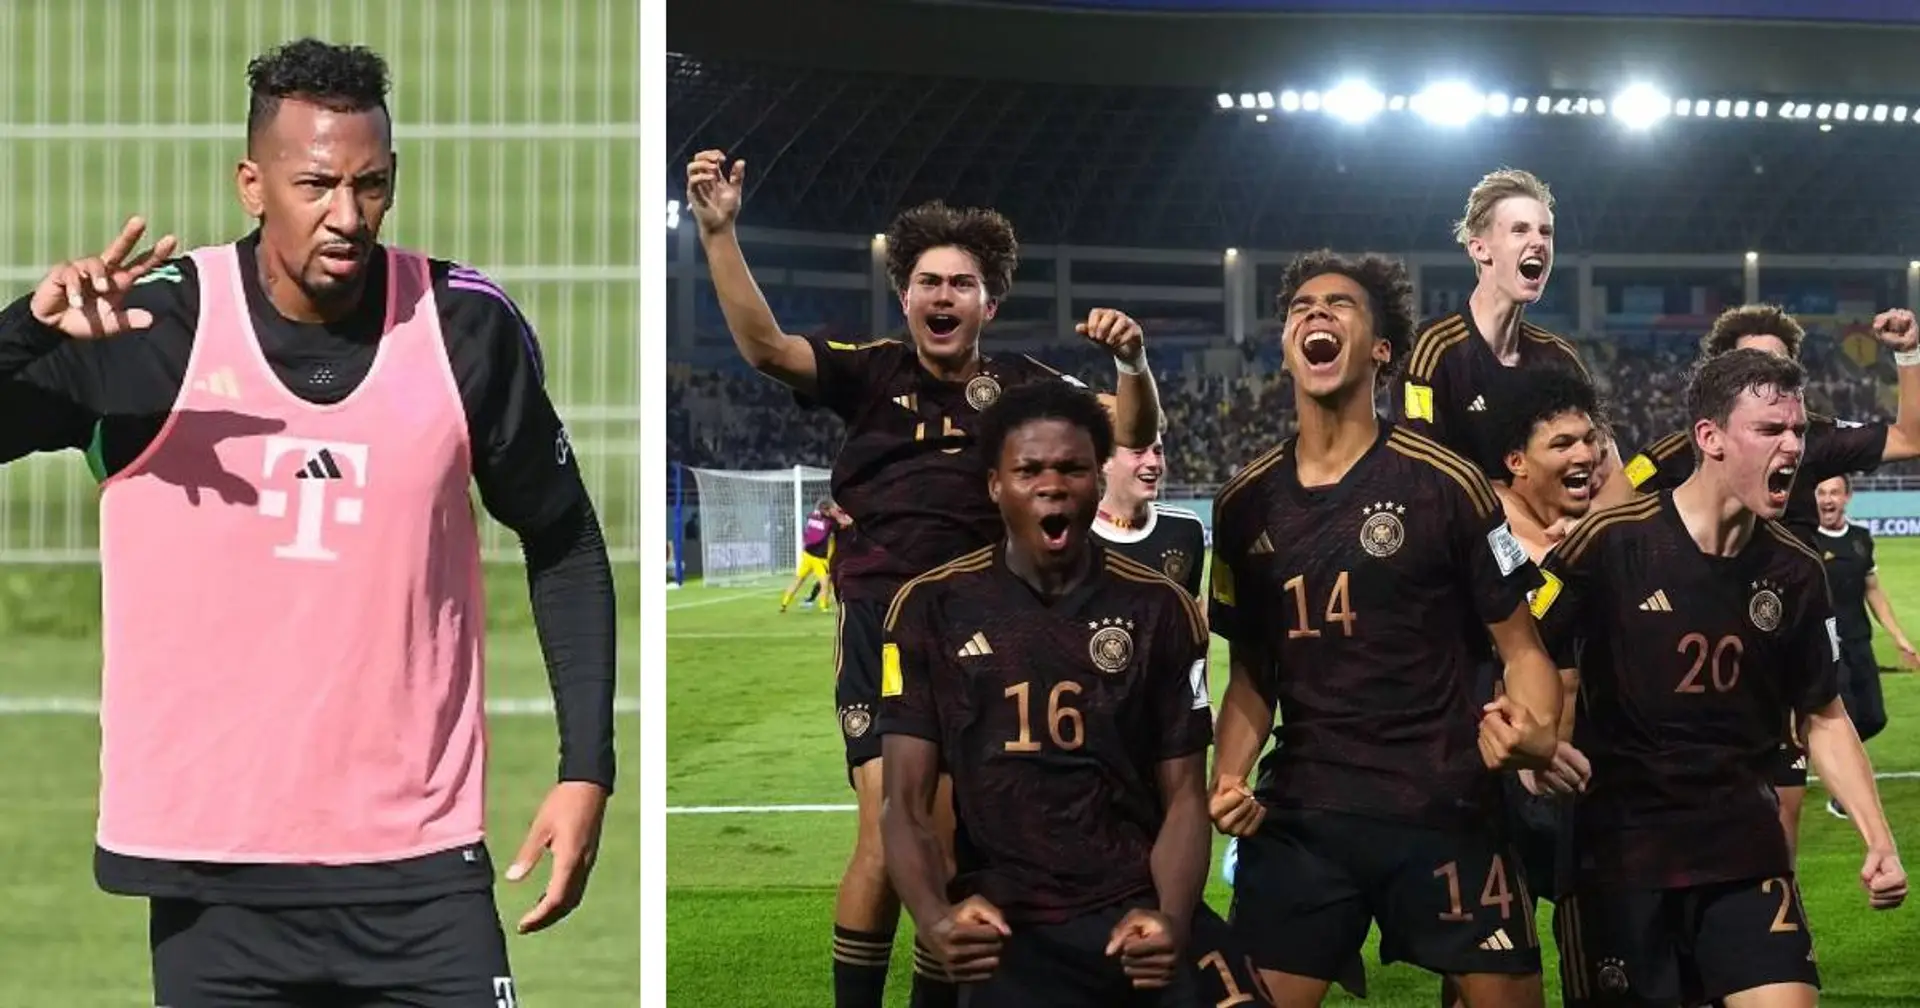 "Die deutsche U17 macht es bei der WM aktuell vor": Boateng erklärt, was DFB-Team vor der EM verbessern soll